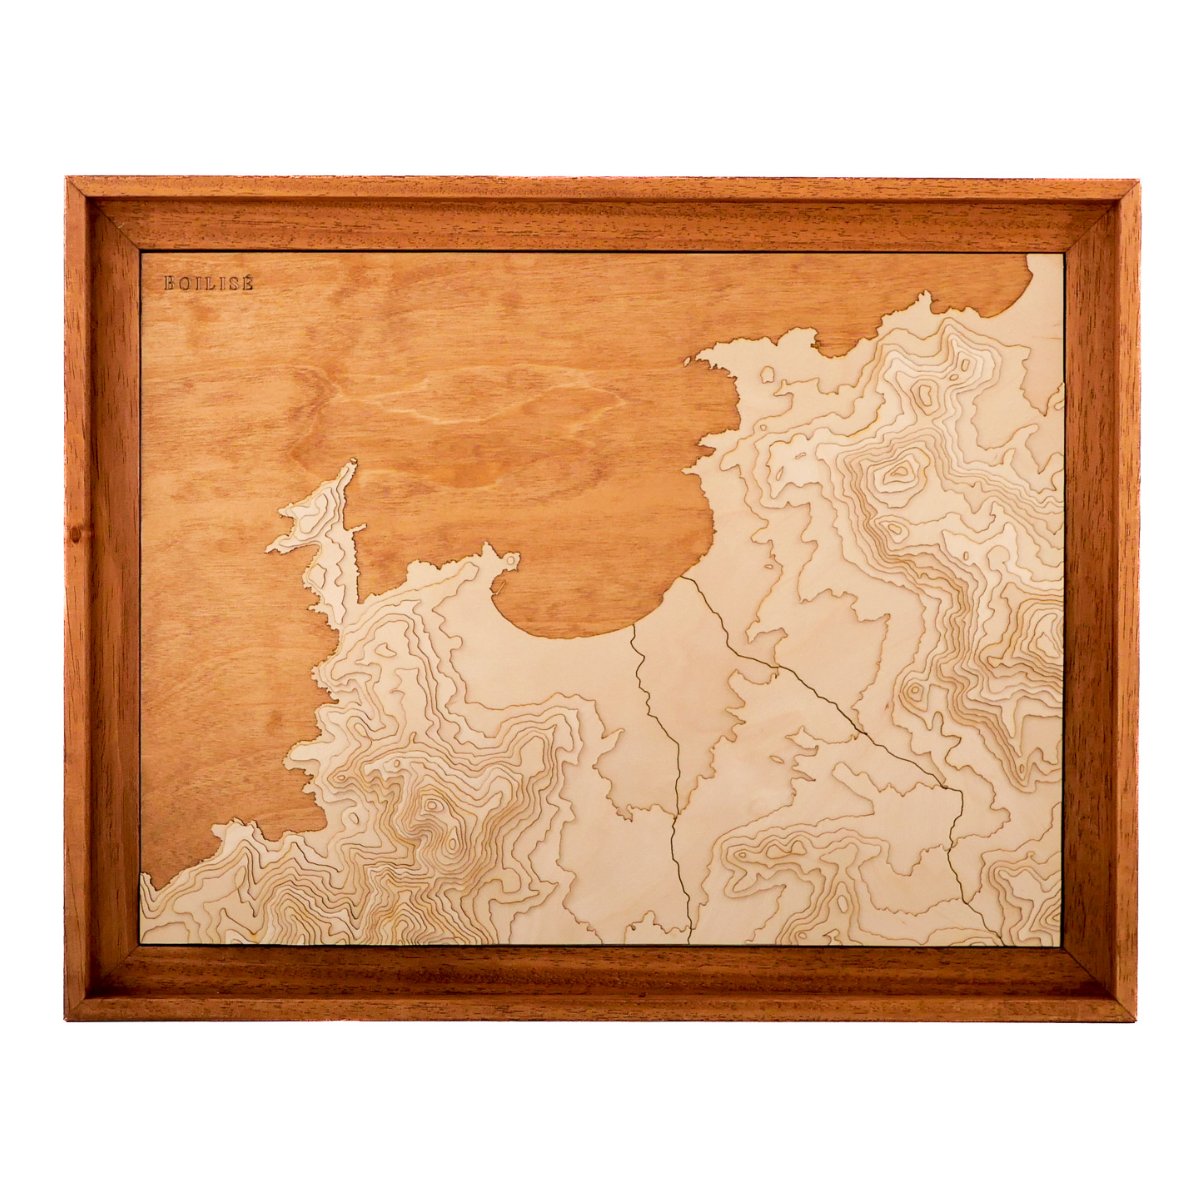 Carte en bois et en relief de la baie de Calvi dans une caisse américaine brune